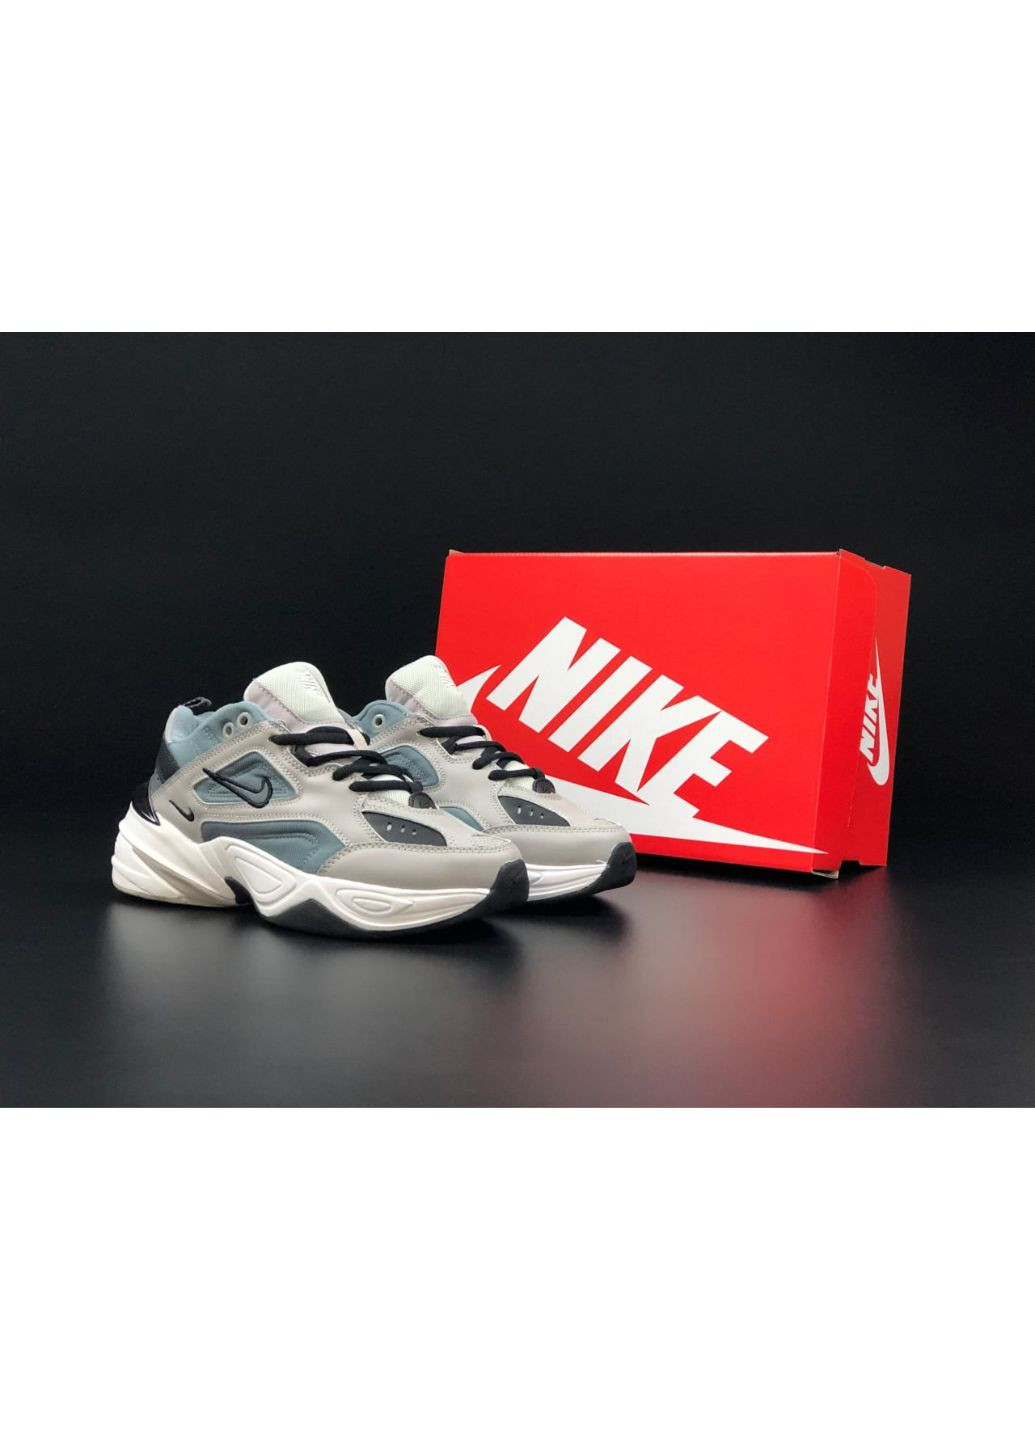 Серые демисезонные женские кроссовки серые «no name» Nike M2k Tekno